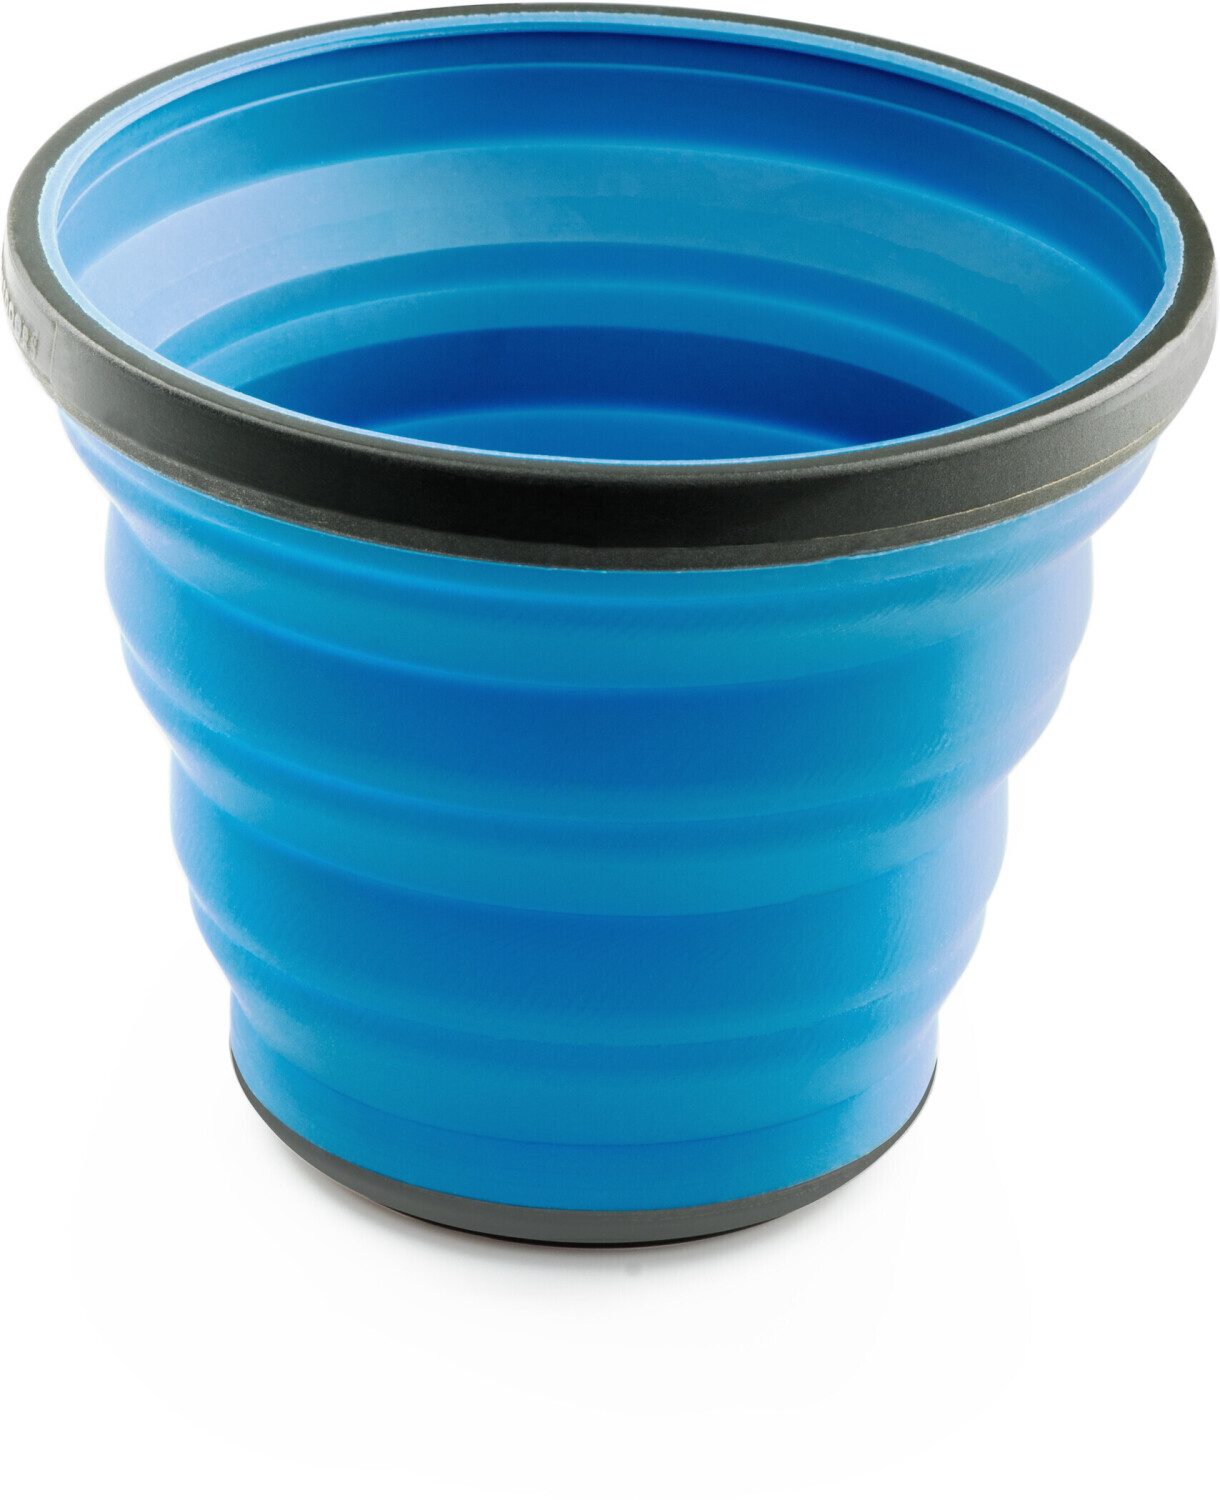 GSI Escape Cup blau